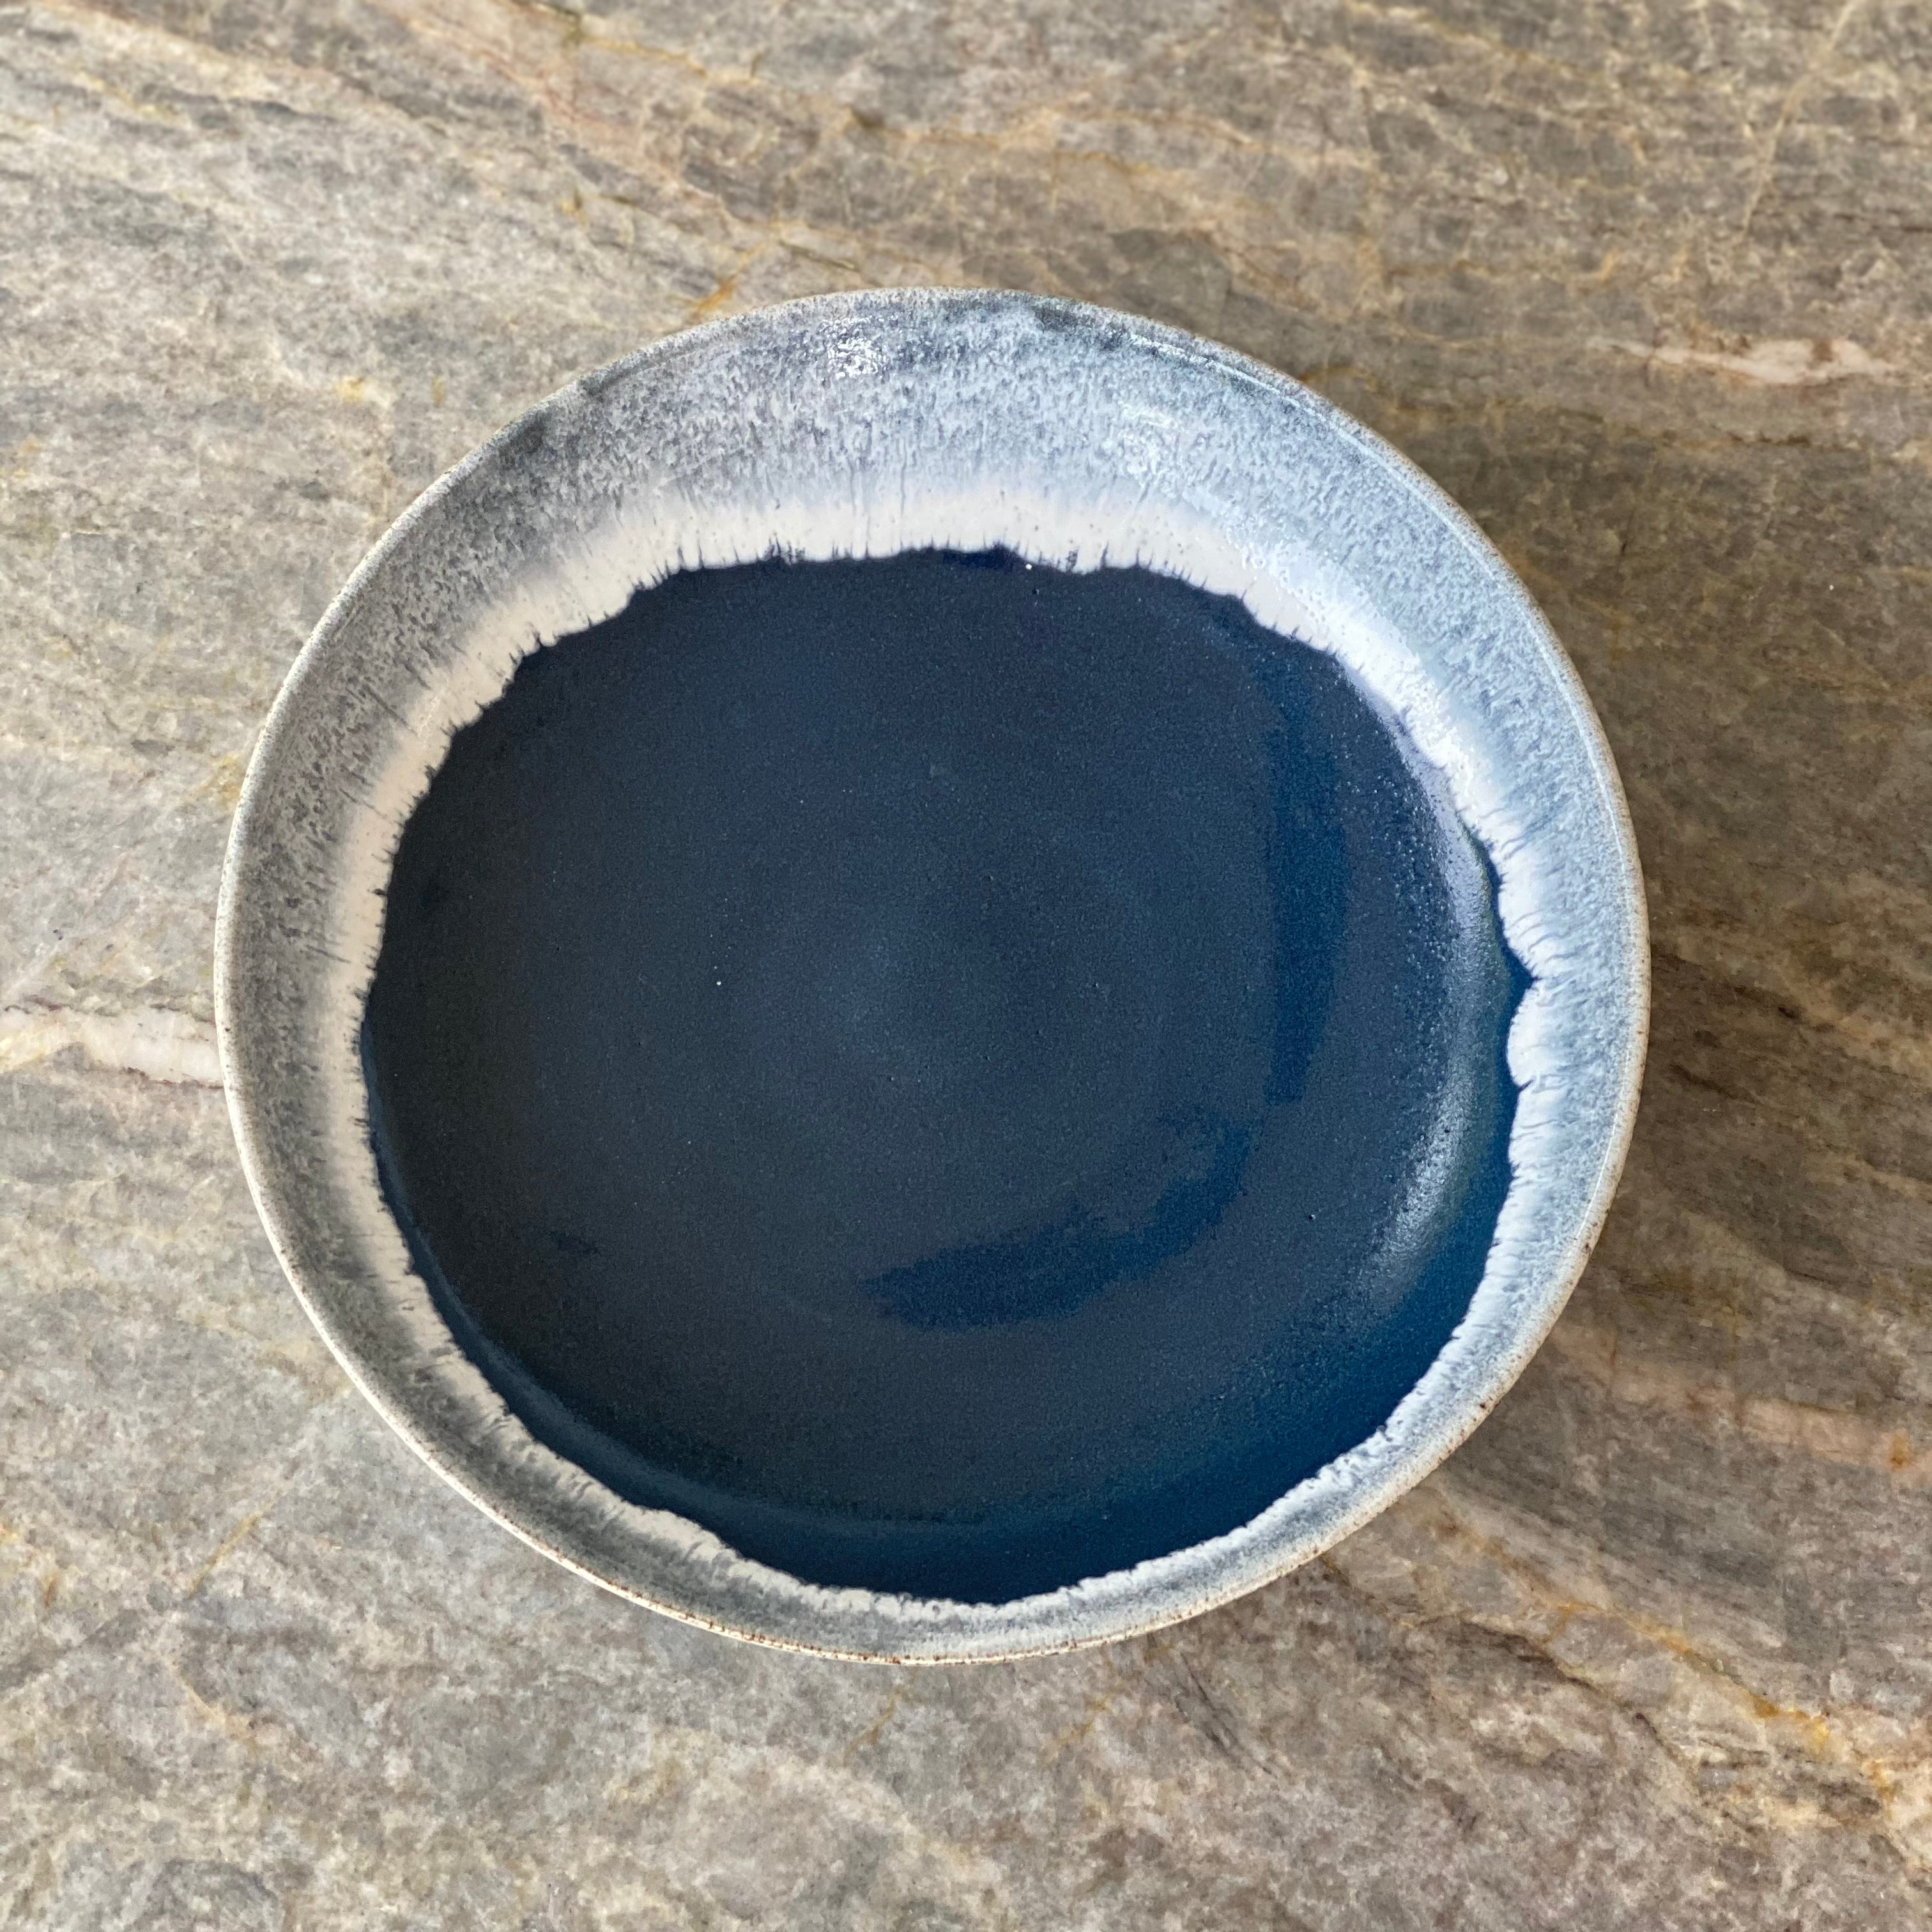 Tasja P skål poke bowl - hvid og mørkeblå